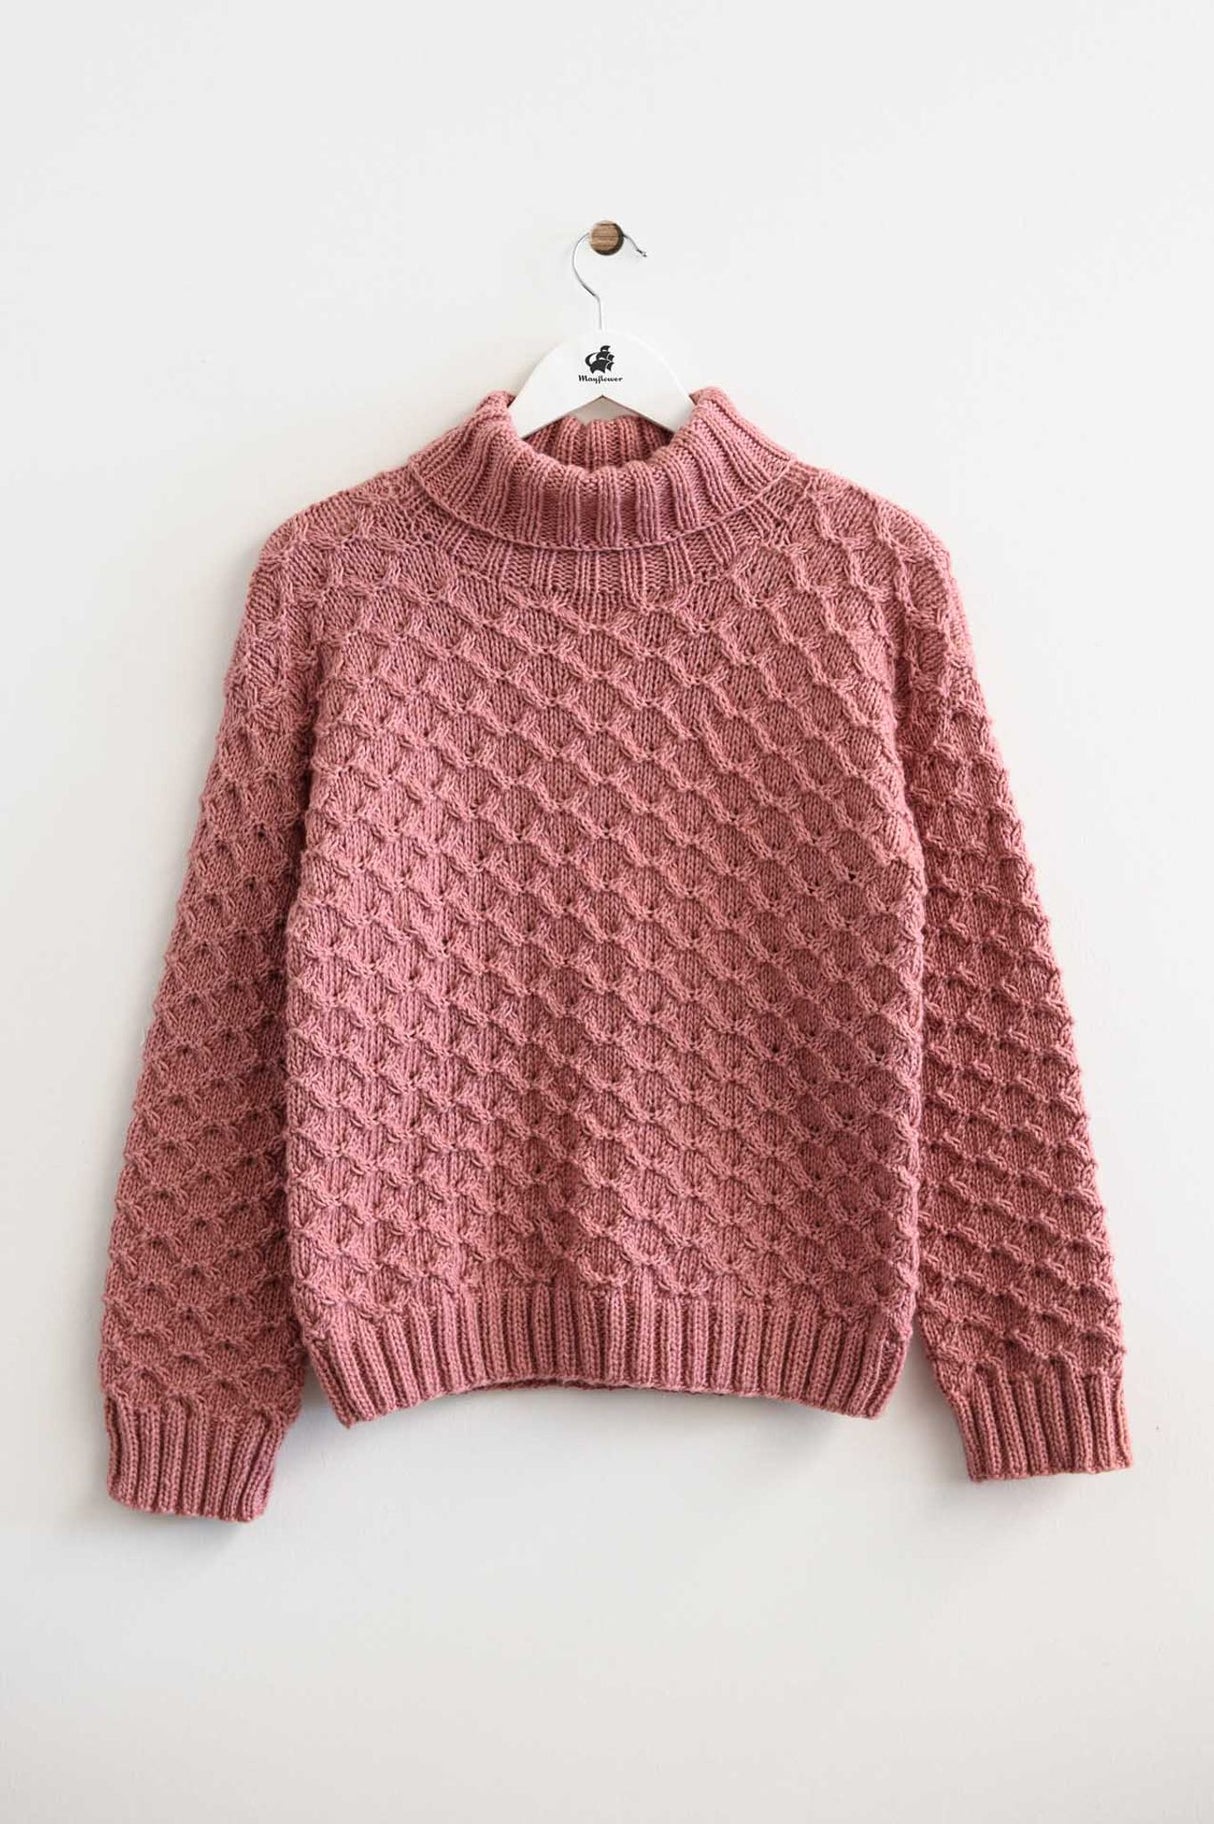 Paprika sweater